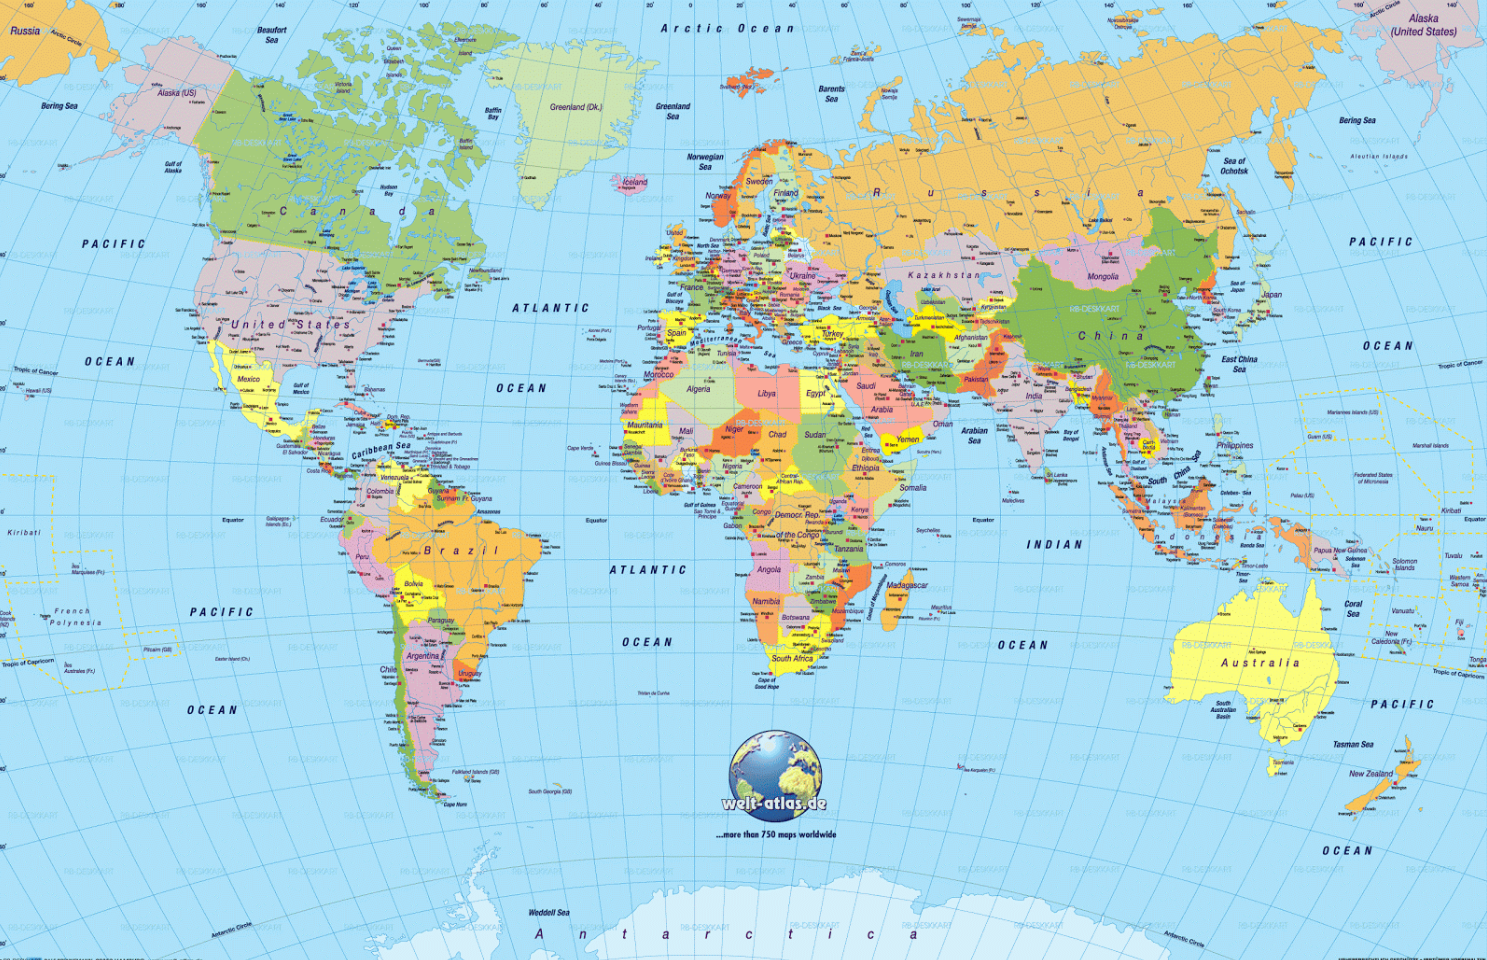 Gambar Peta Dunia Di Dalam Buku Pelajaran